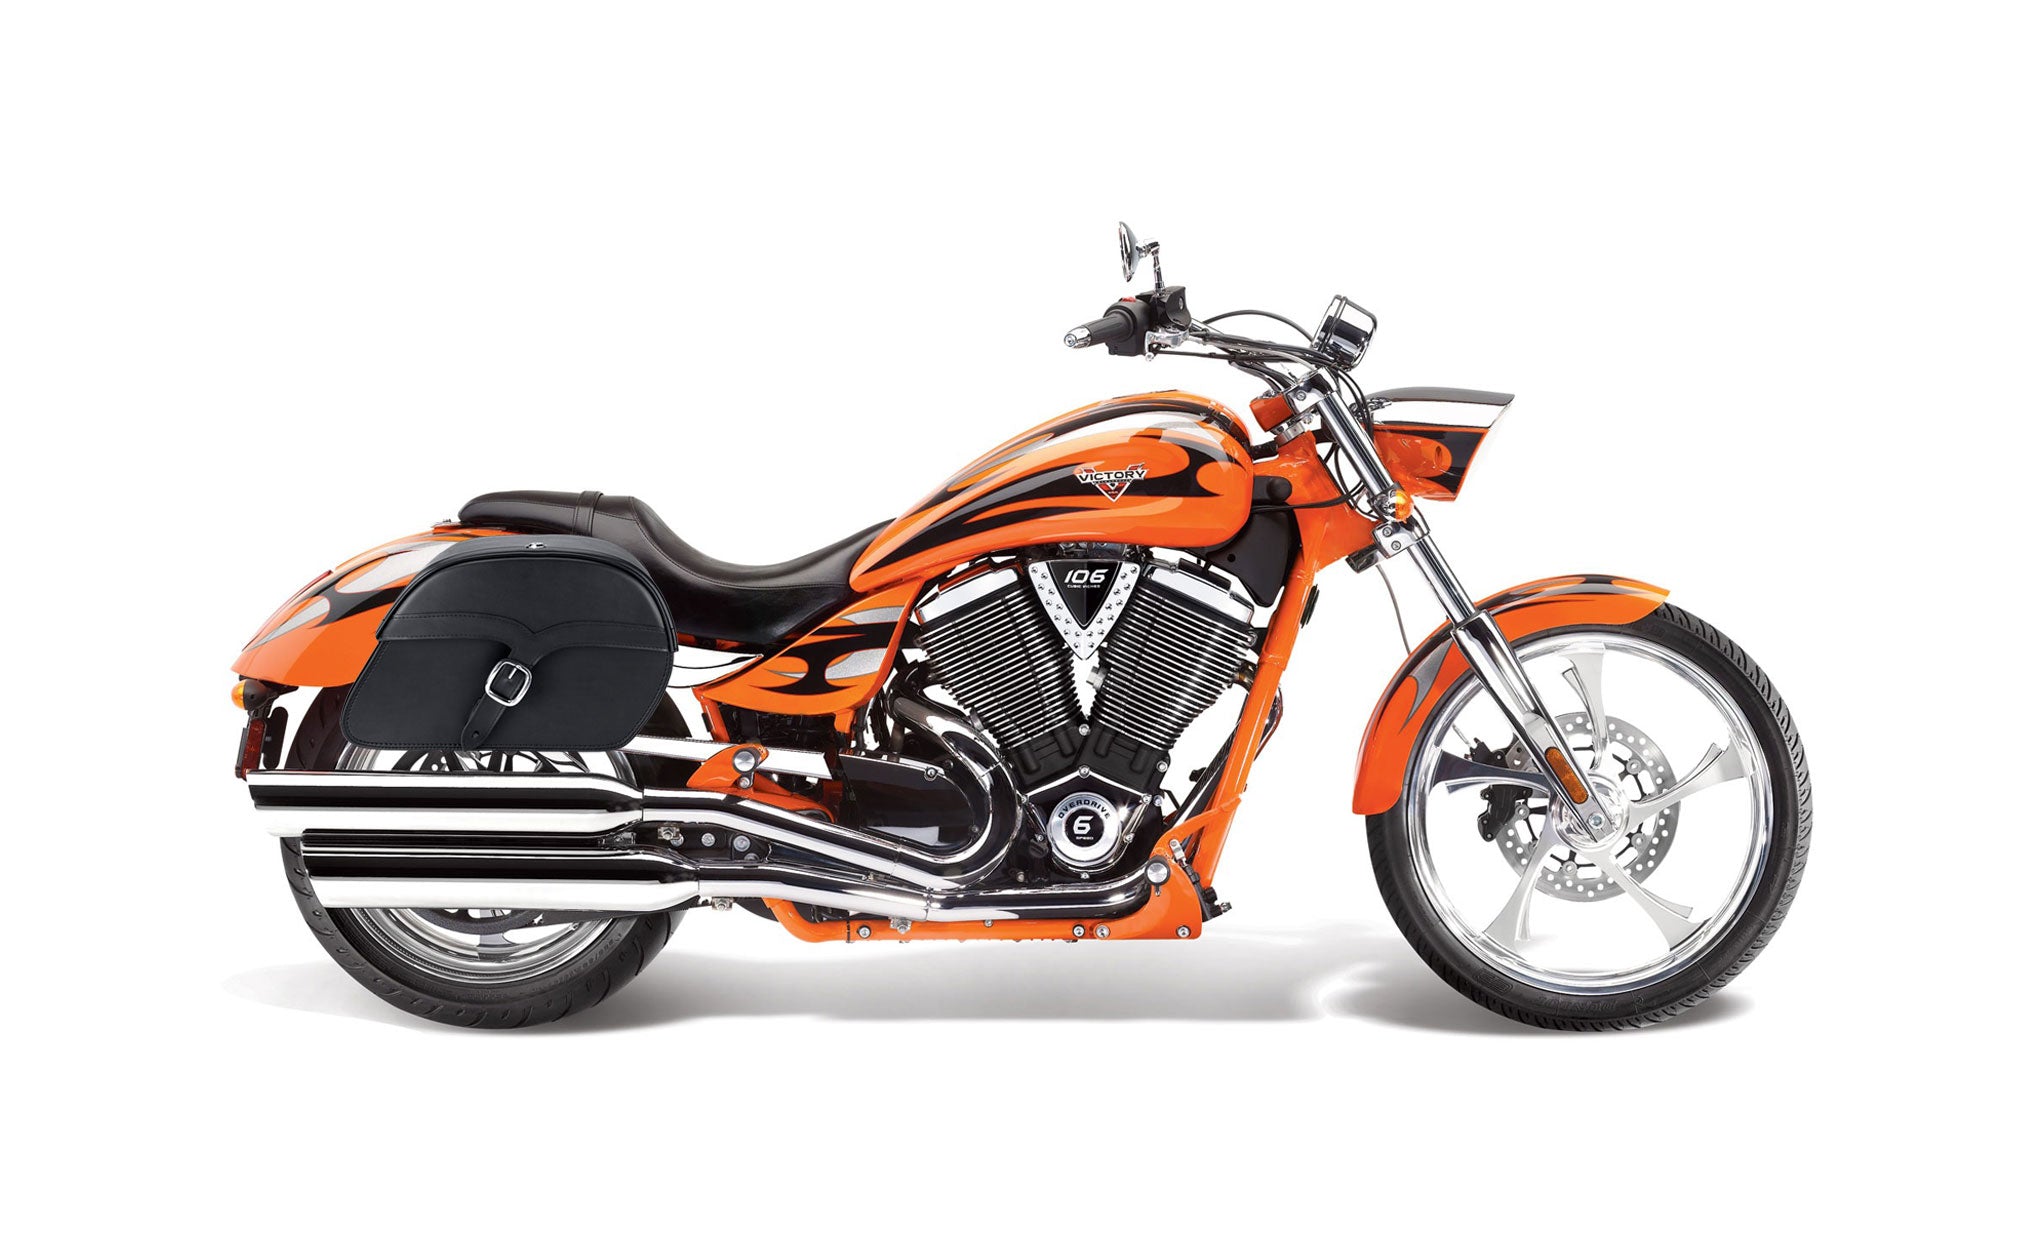 Viking Vintage Medium Victory Jackpot Leather Motorcycle Saddlebags on Bike Photo @expand